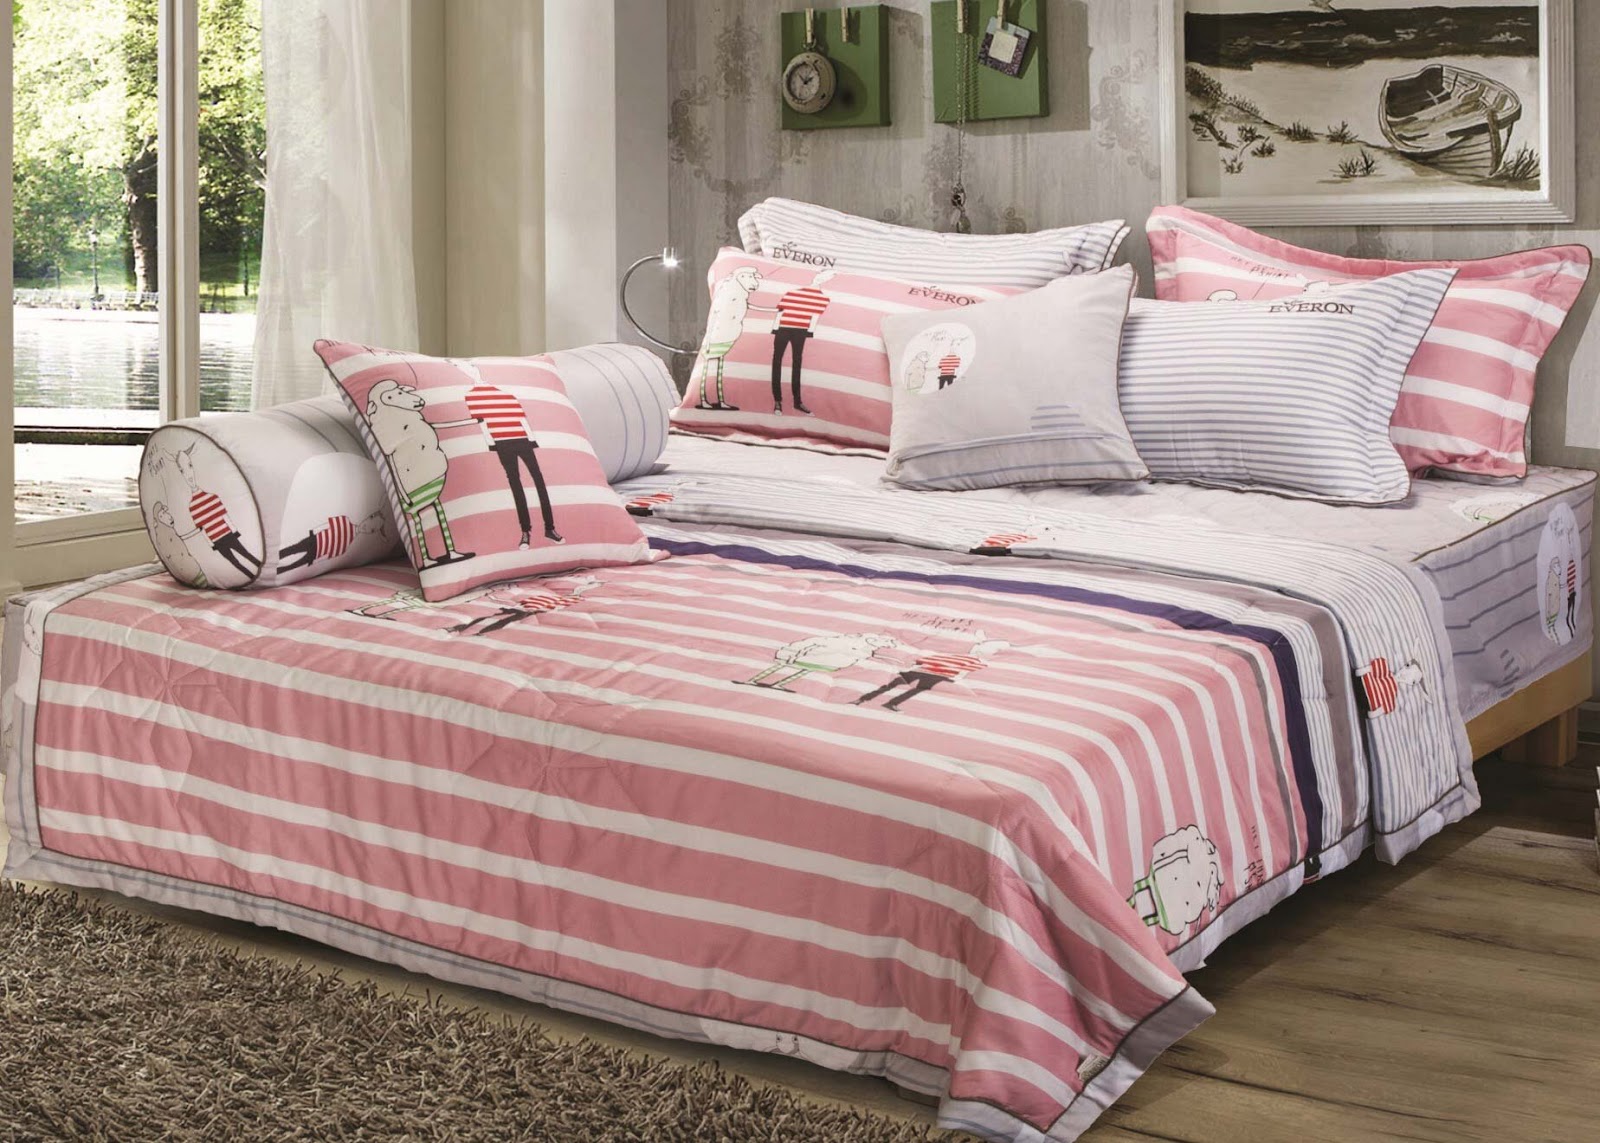 Chọn ga trải giường với những họa tiết đơn giản kết hợp với gam màu nhẹ nhàng